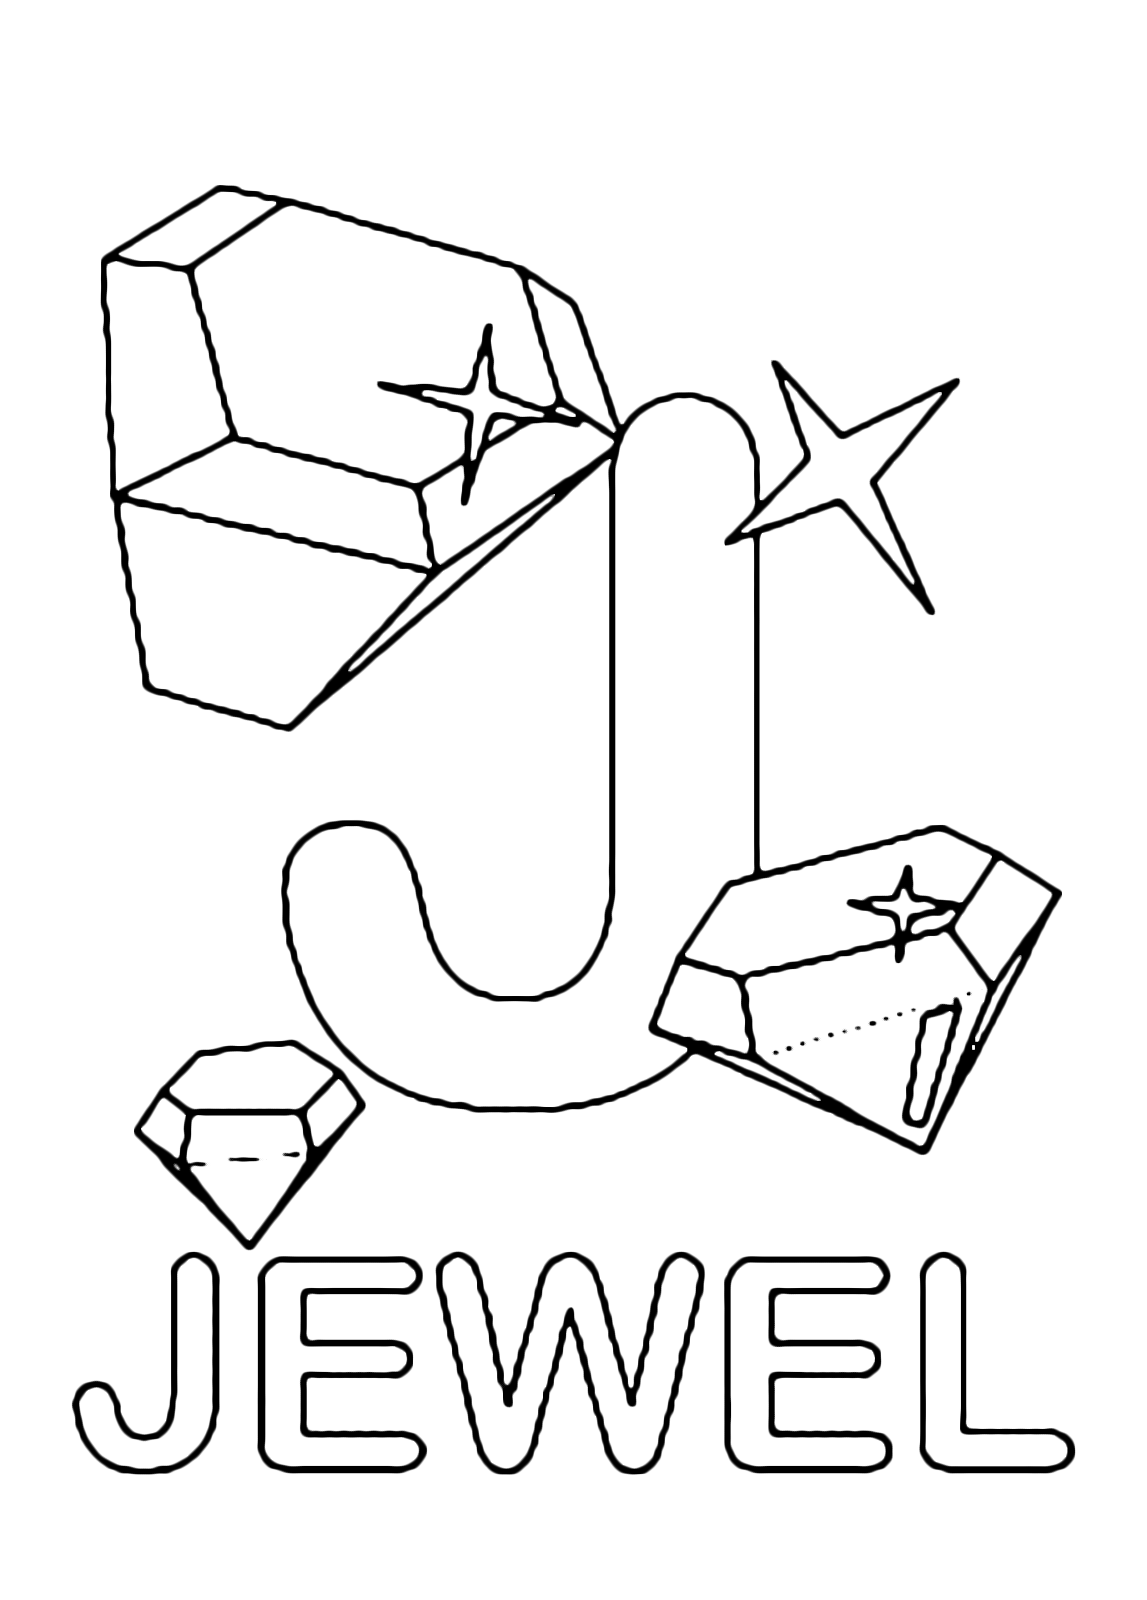 Lettere e numeri - Lettera J in stampatello di jewel (gioiello) in Inglese